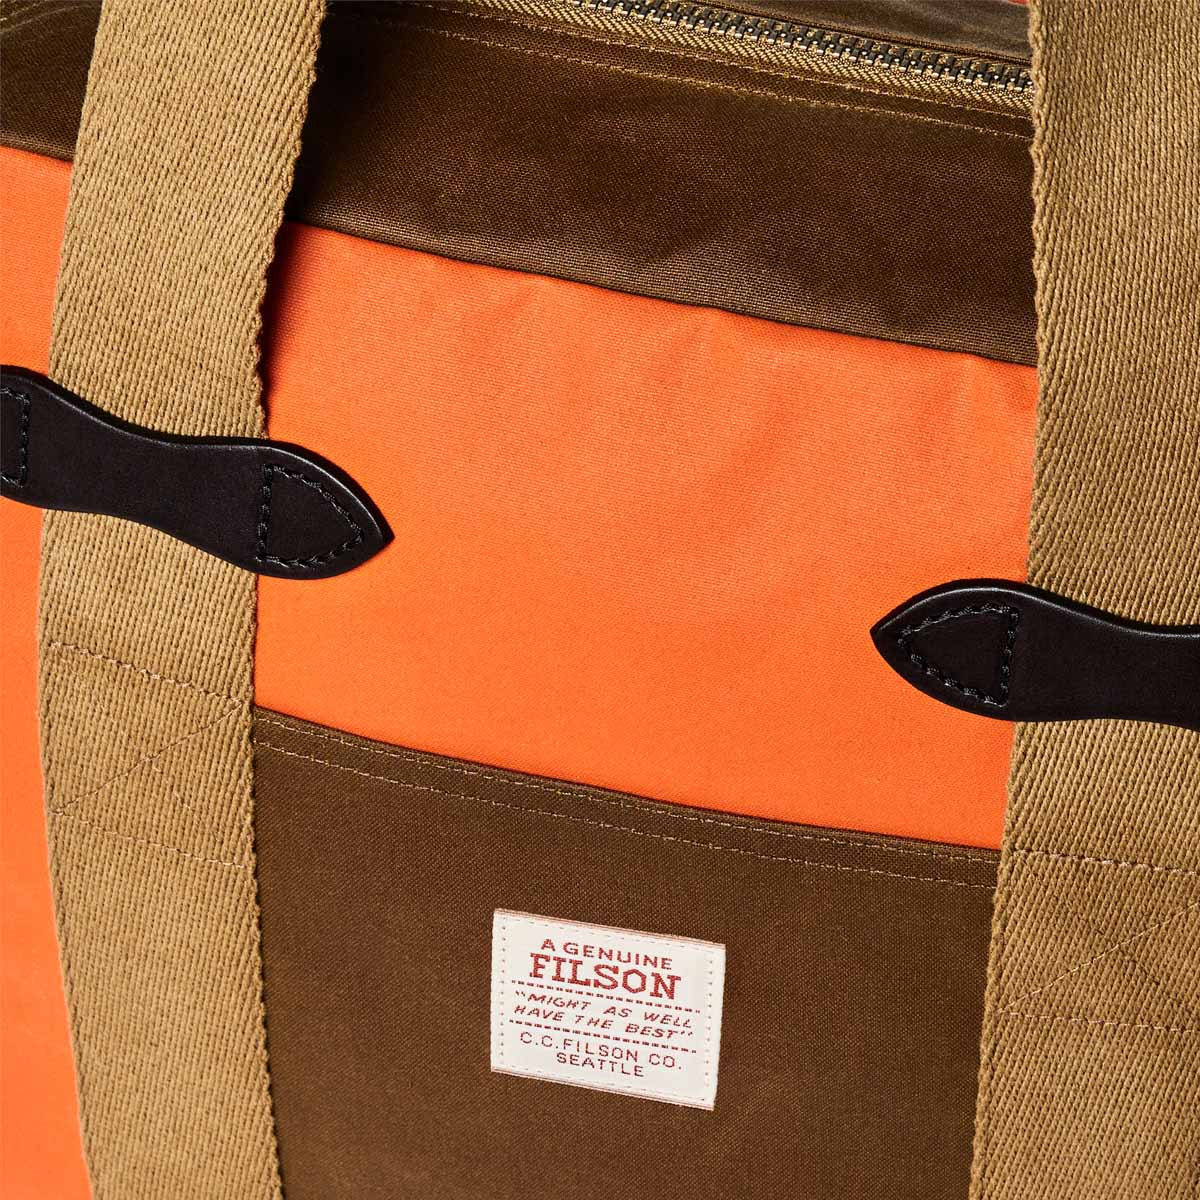 Filson Tin Cloth Tote Bag With Zipper Dark Tan/Flame, om naast je lichaam te dragen of comfortabel aan je schouder